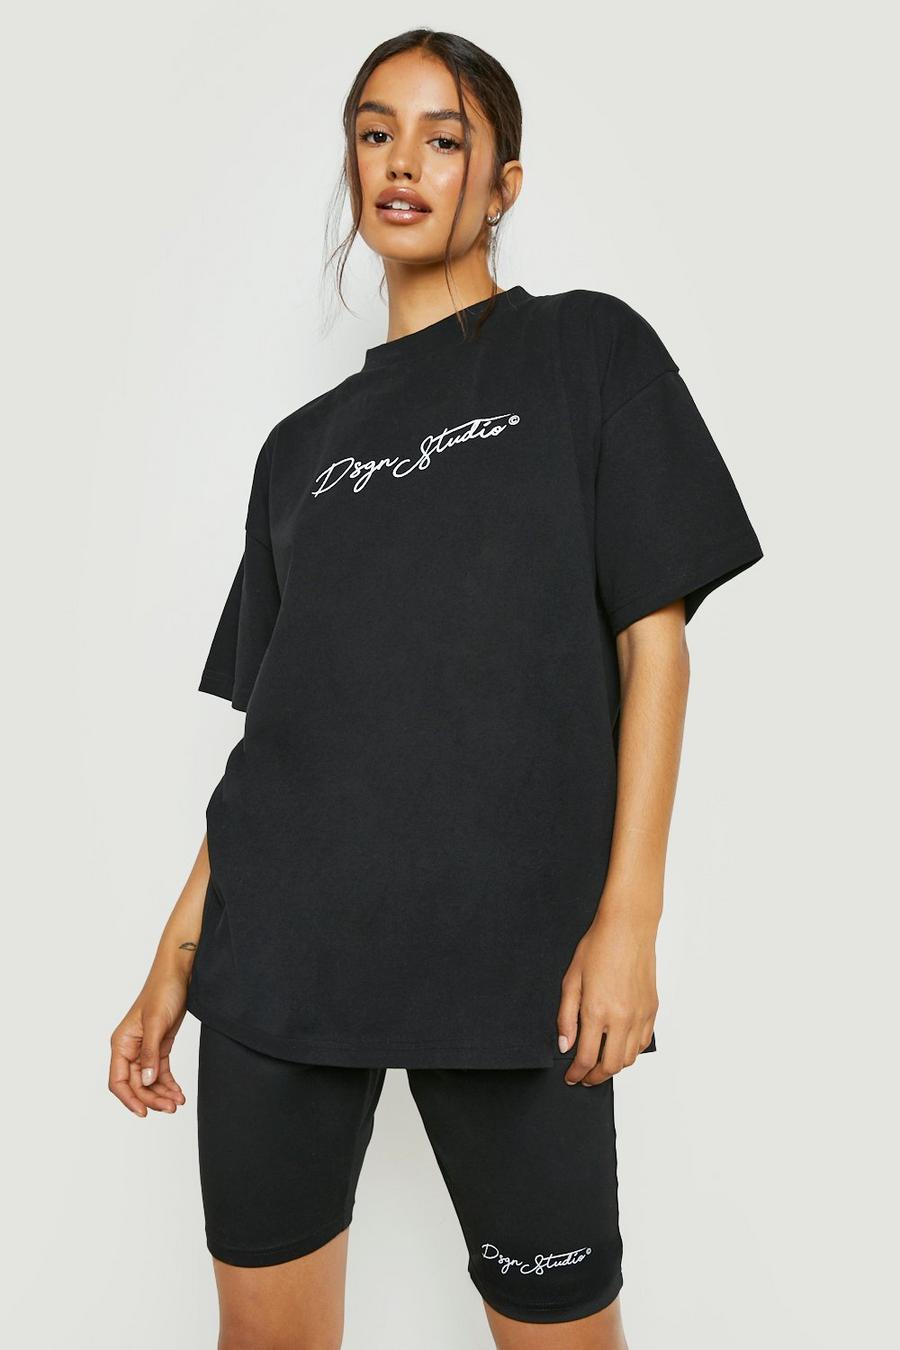 T-Shirt mit Slogan & Radlershorts, Black schwarz